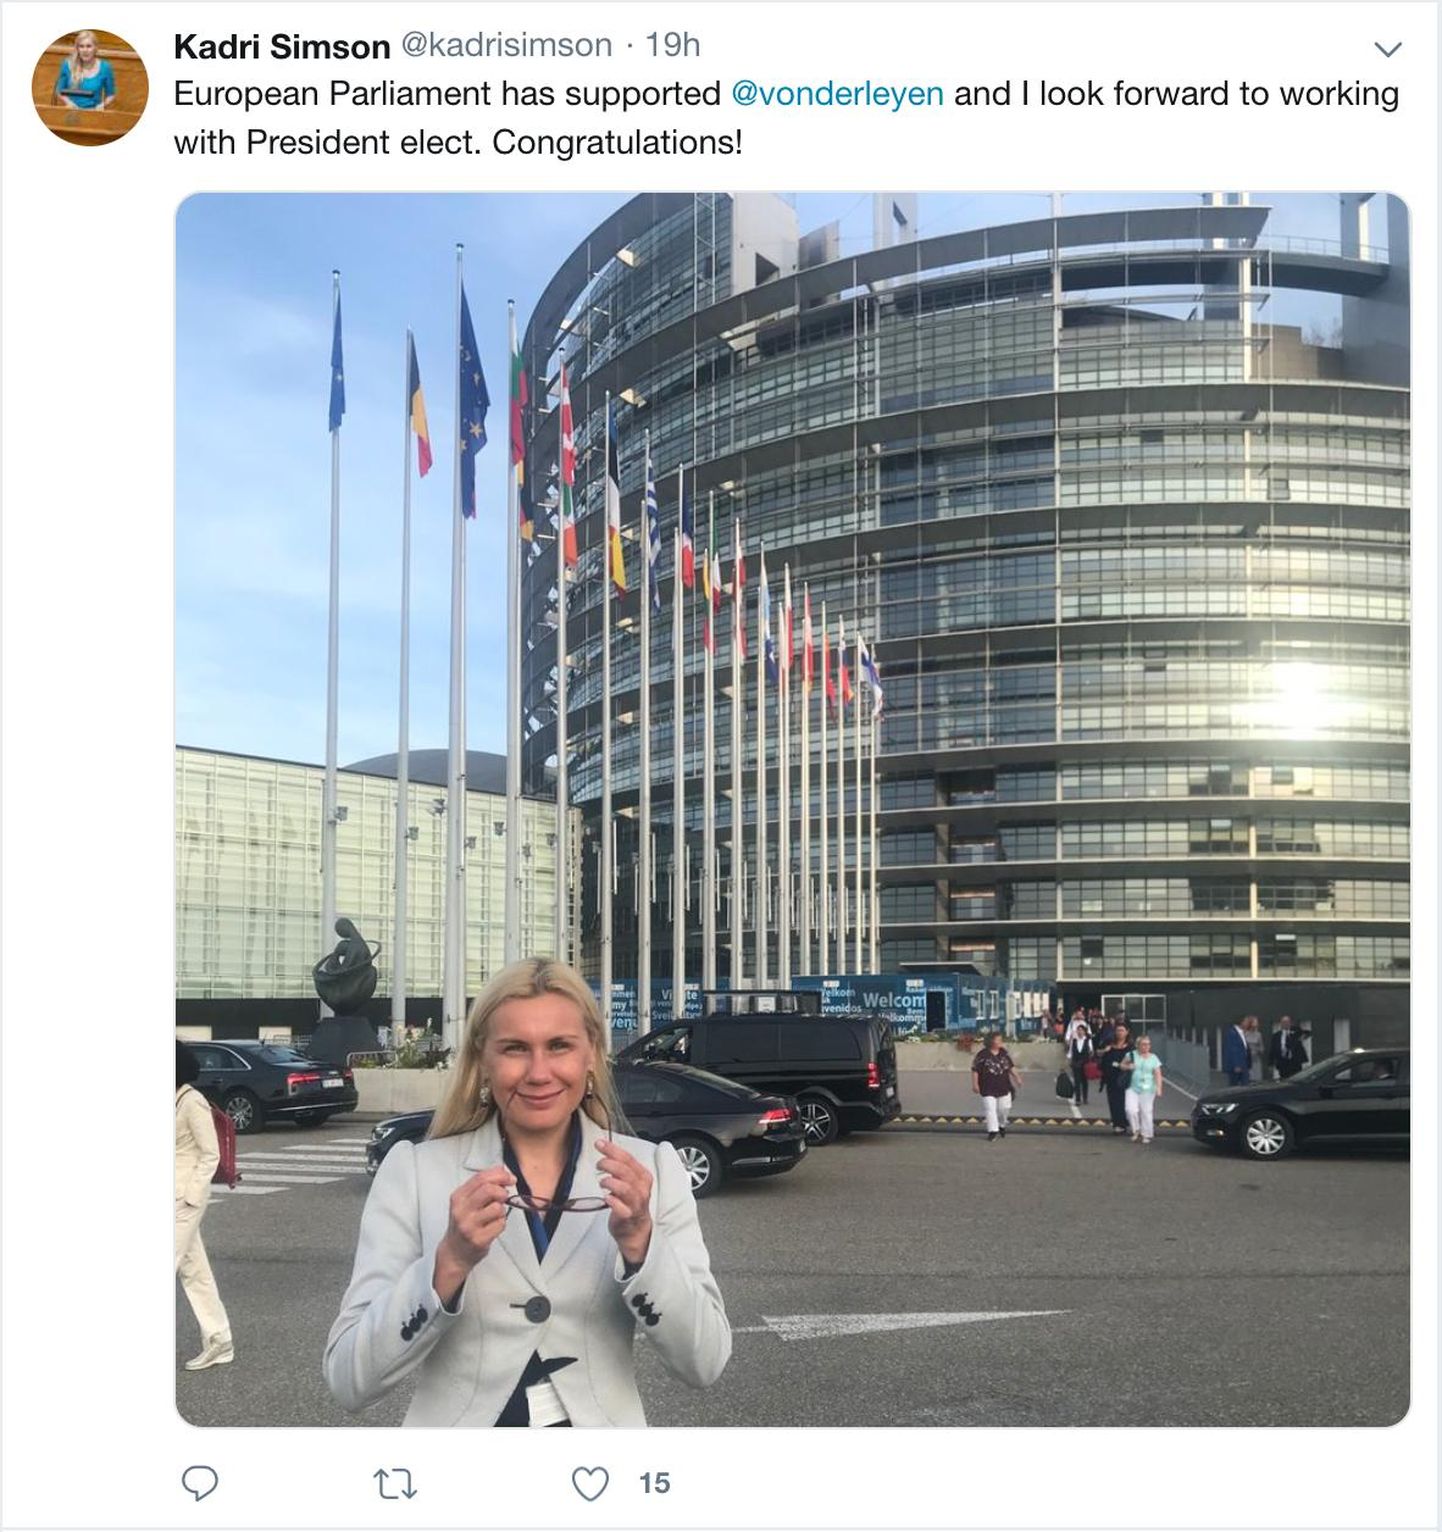 Lootuses saada lõpuks volinikukuulamisele juhtus Kadri Simson Strasbourgi europarlamenti täpselt samal ajal, kui valiti ära järgmine Euroopa Komisjoni president.